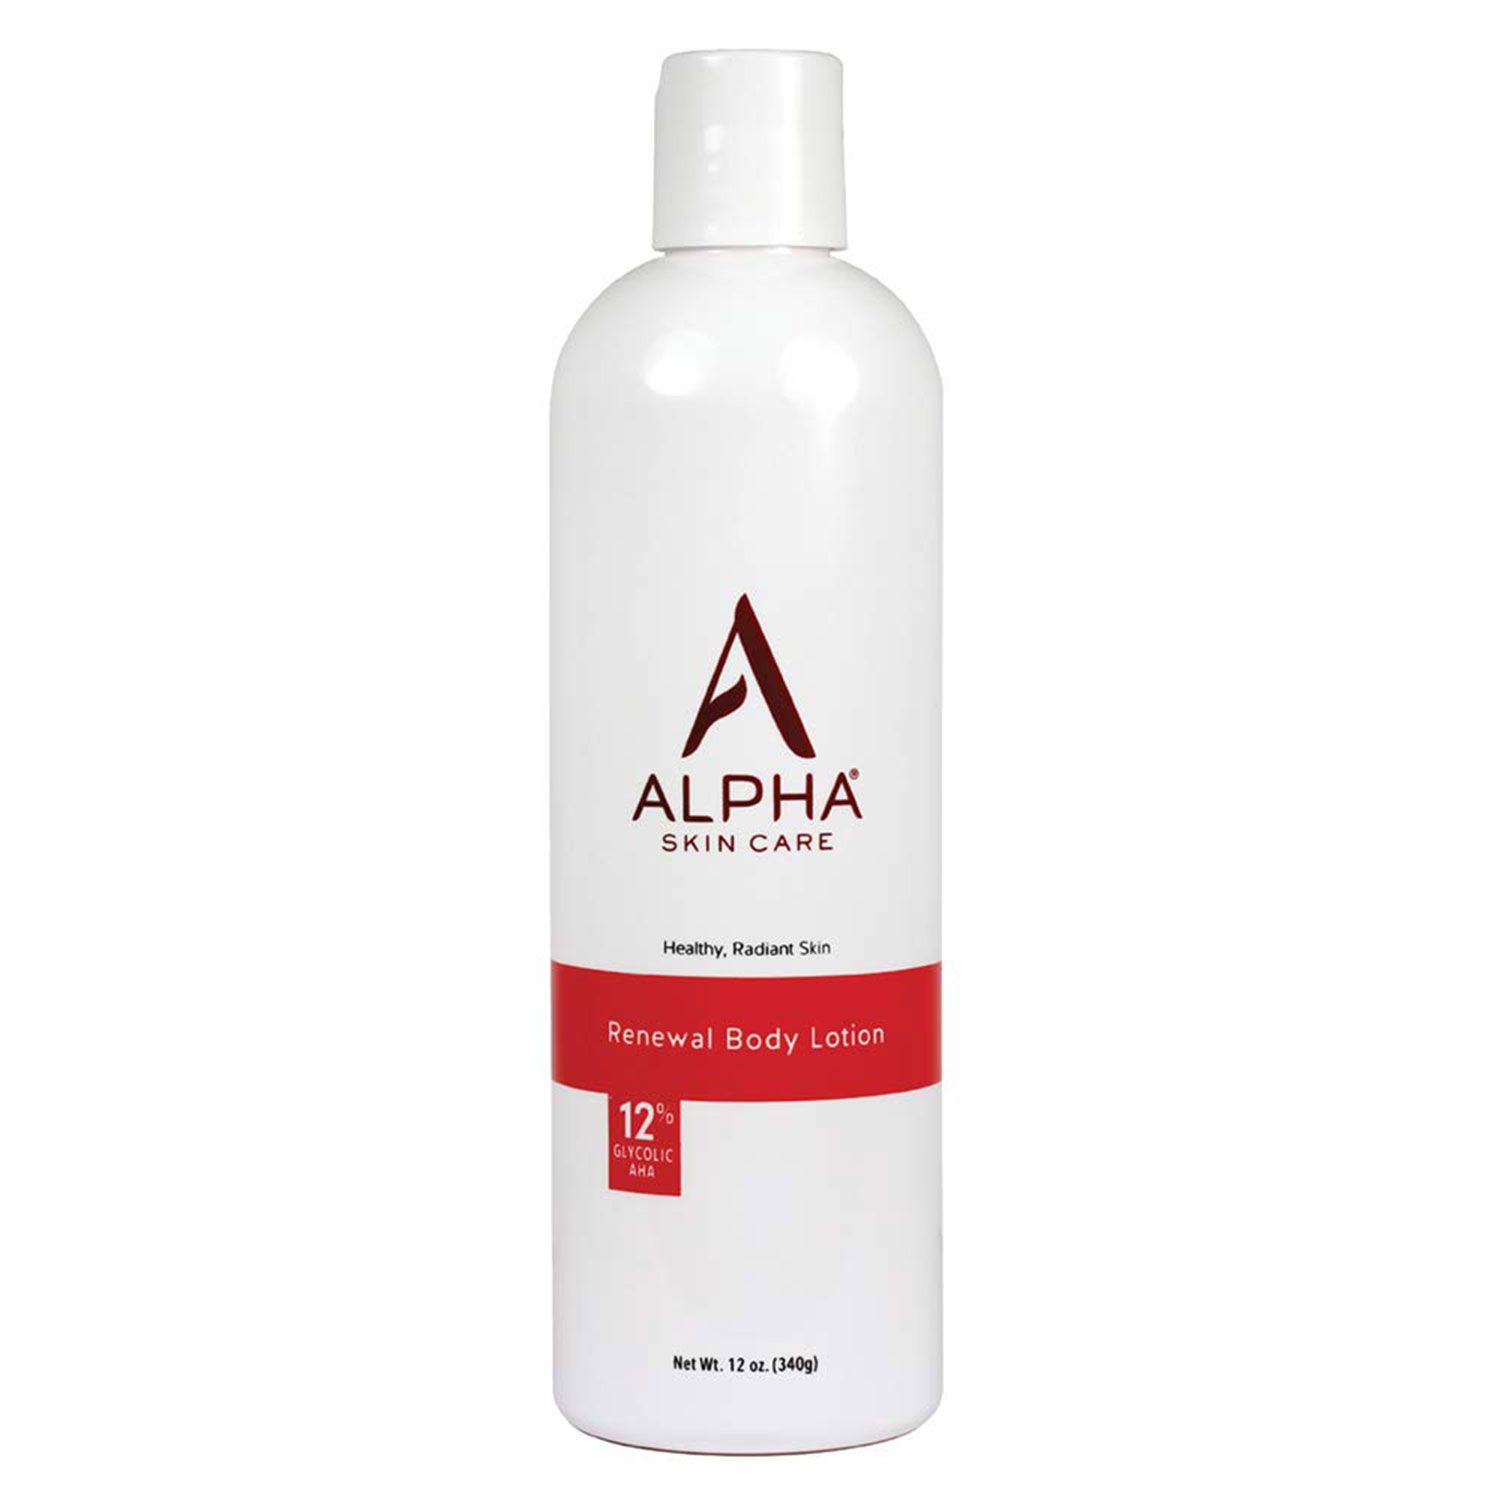 Amazonin parhaat ikääntymistä estävät tuotteet: Alpha Skin Care Renewal Body Lotion